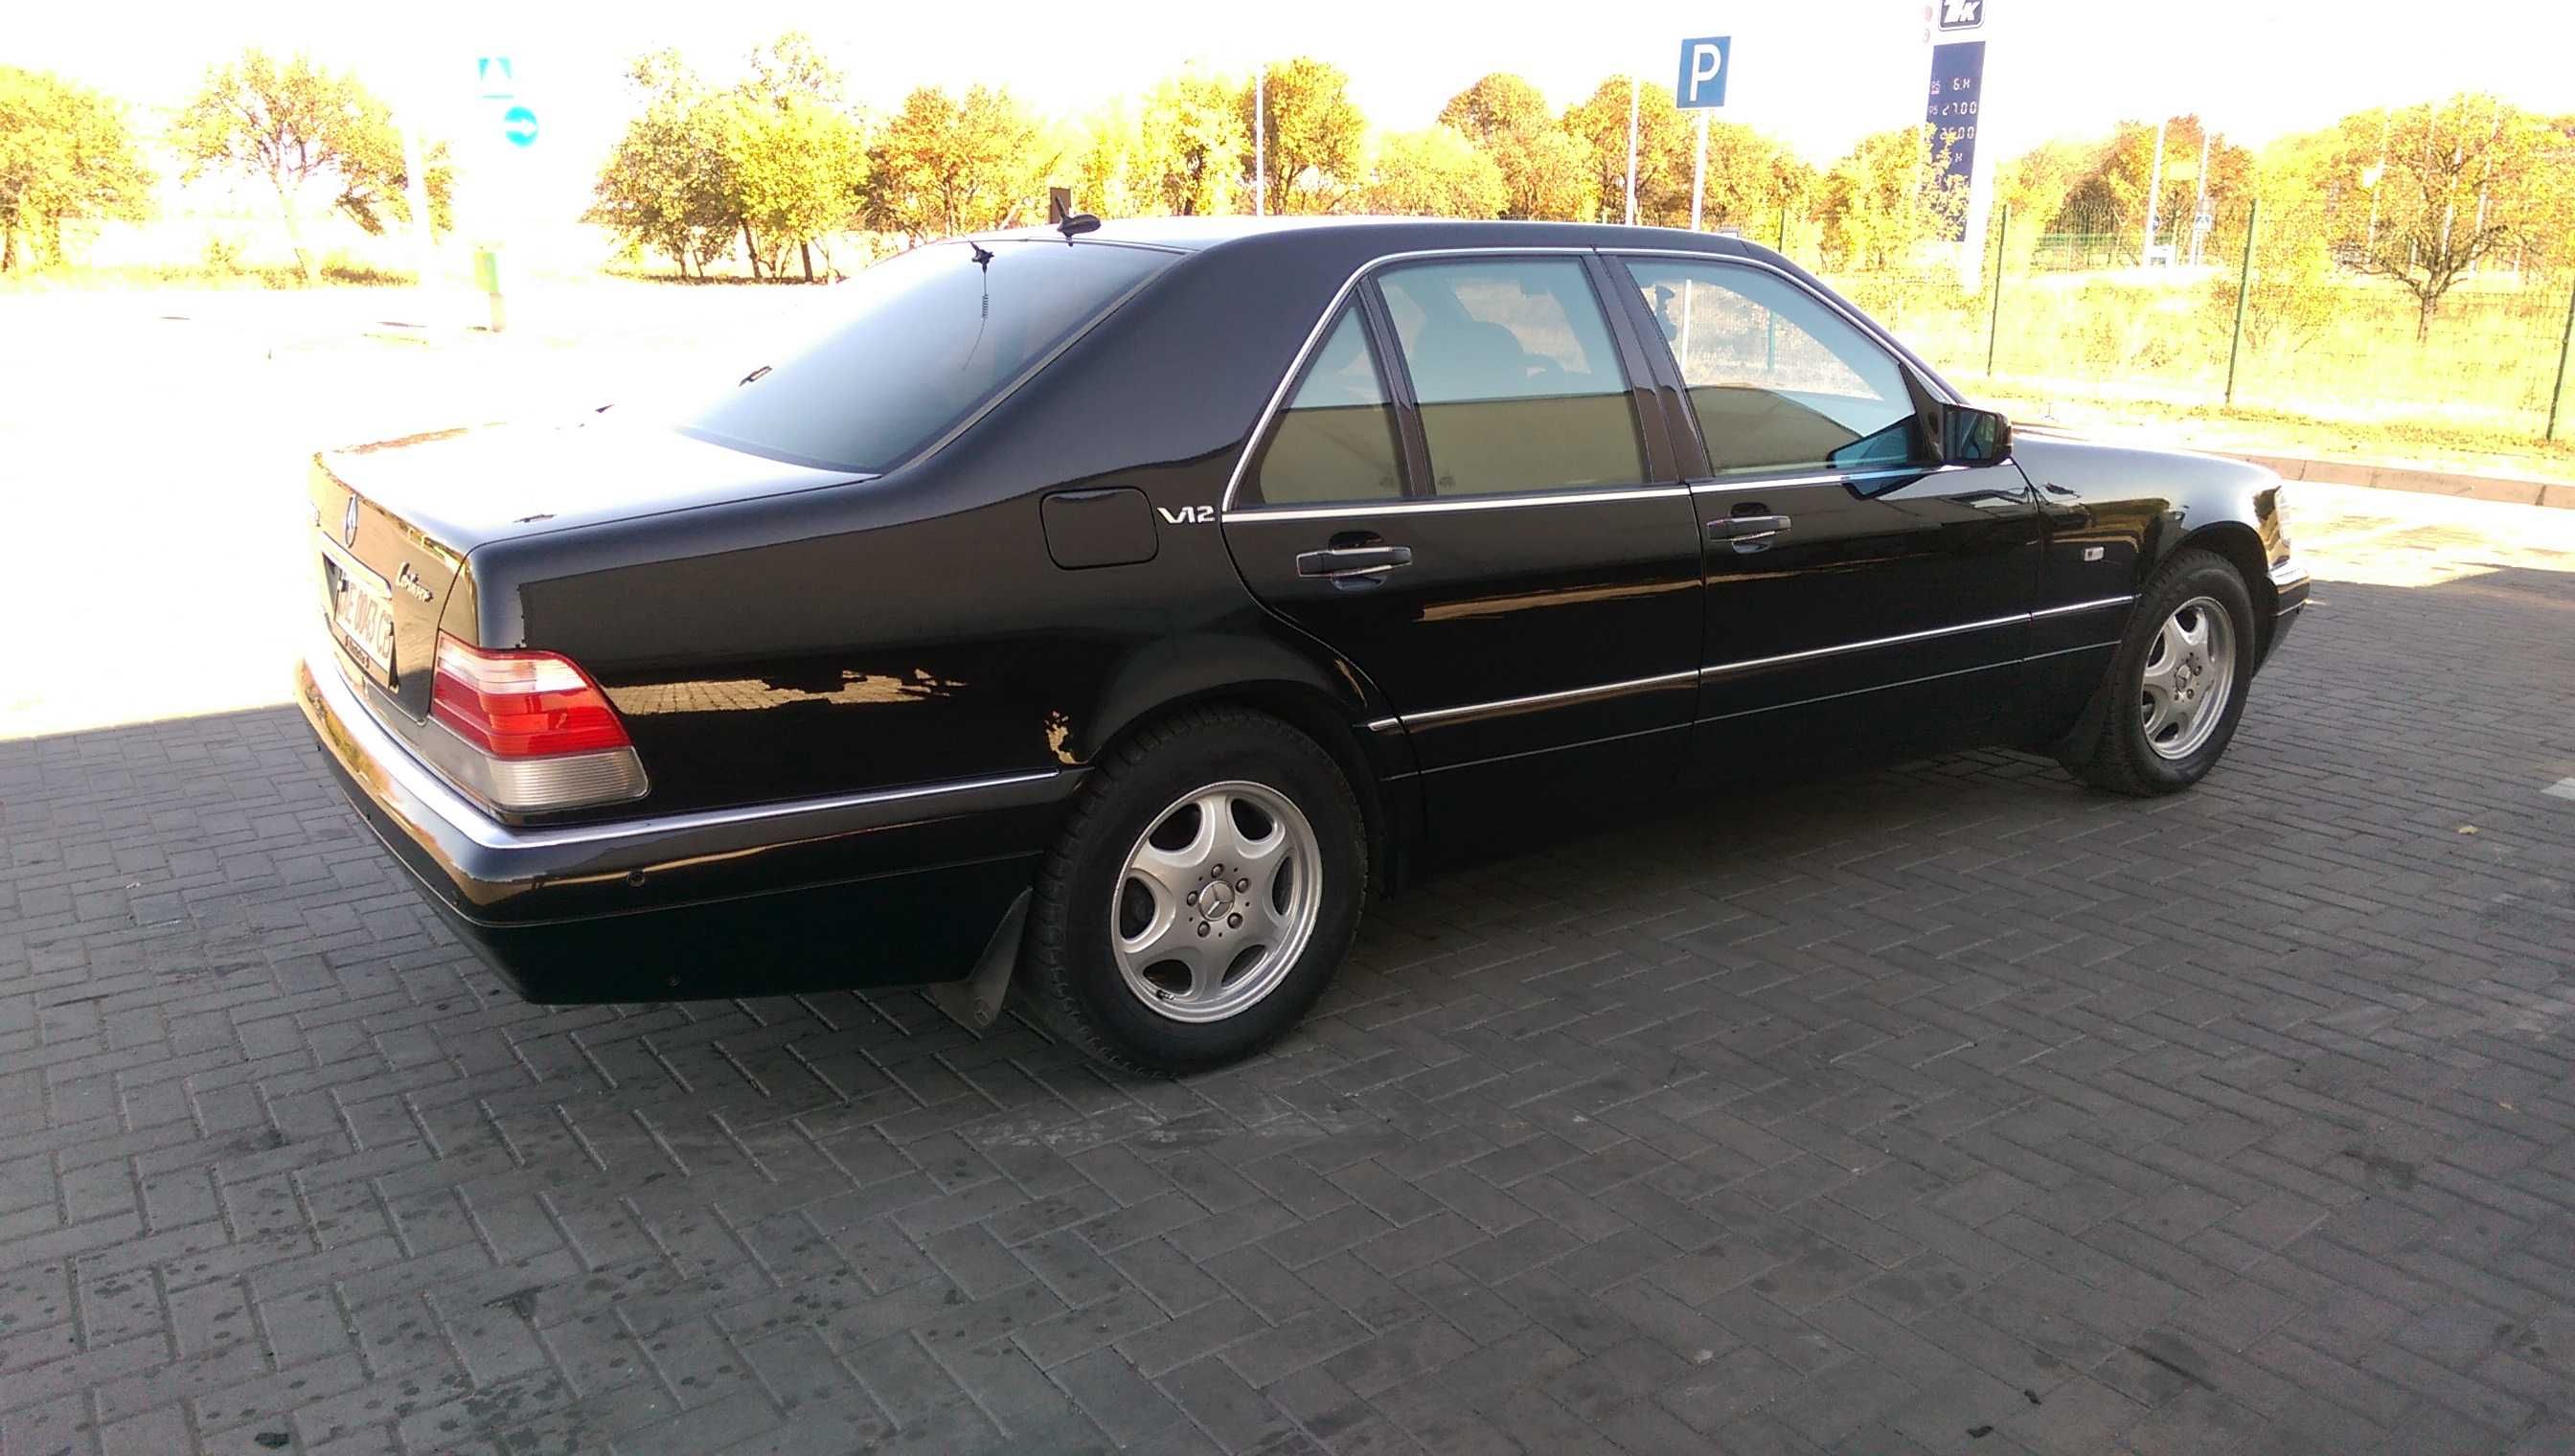 Продам Мерседес W140  1997г  3.2 л Бензин   Черный  Павлоград